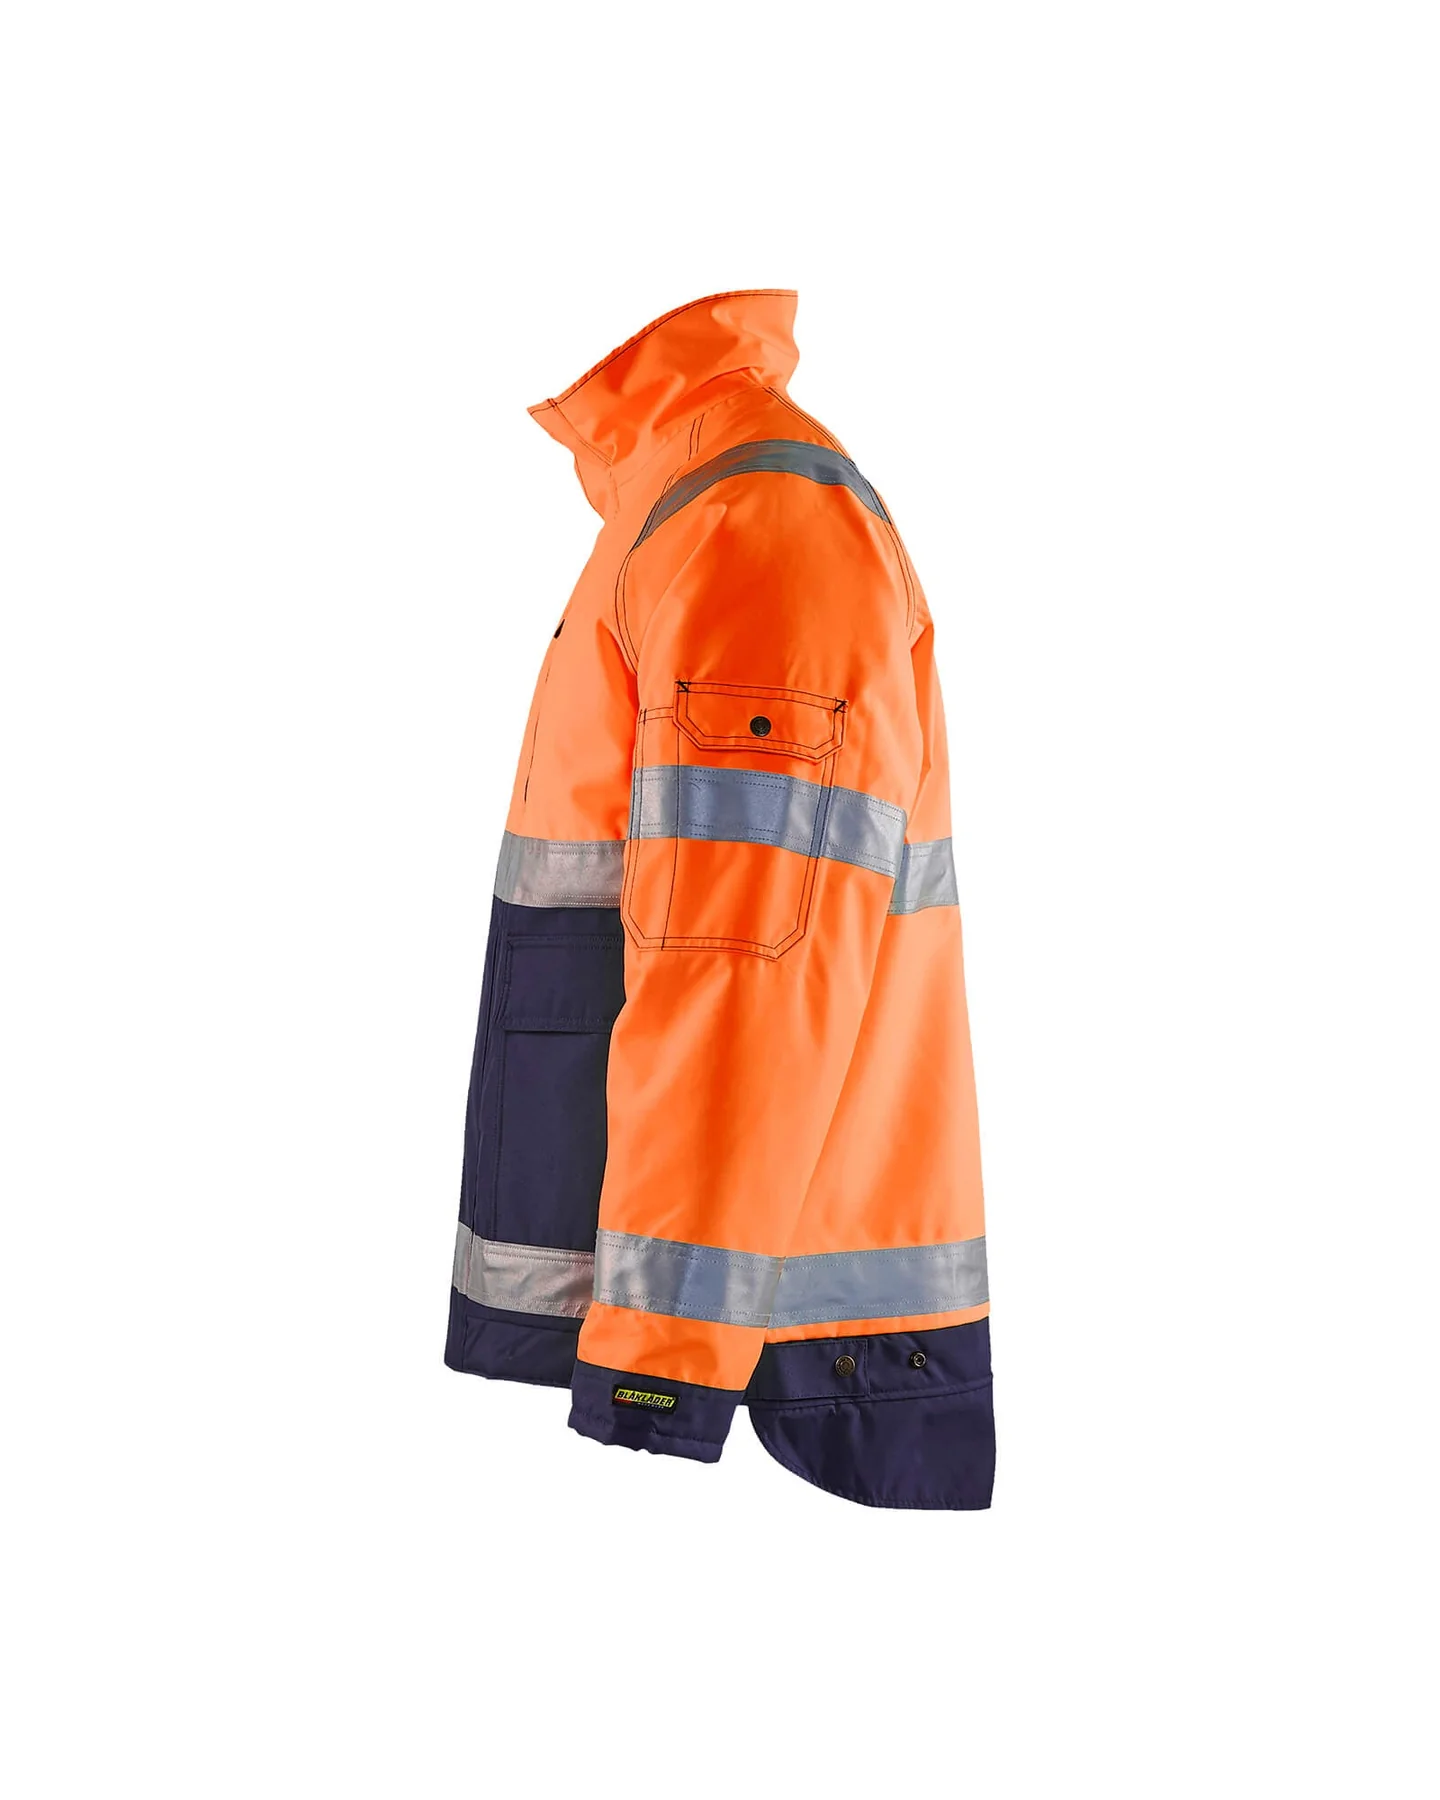 blaklader-hi-vis-winter-jacket-48271977-orange-navy-blue-3-1800×1800.webp